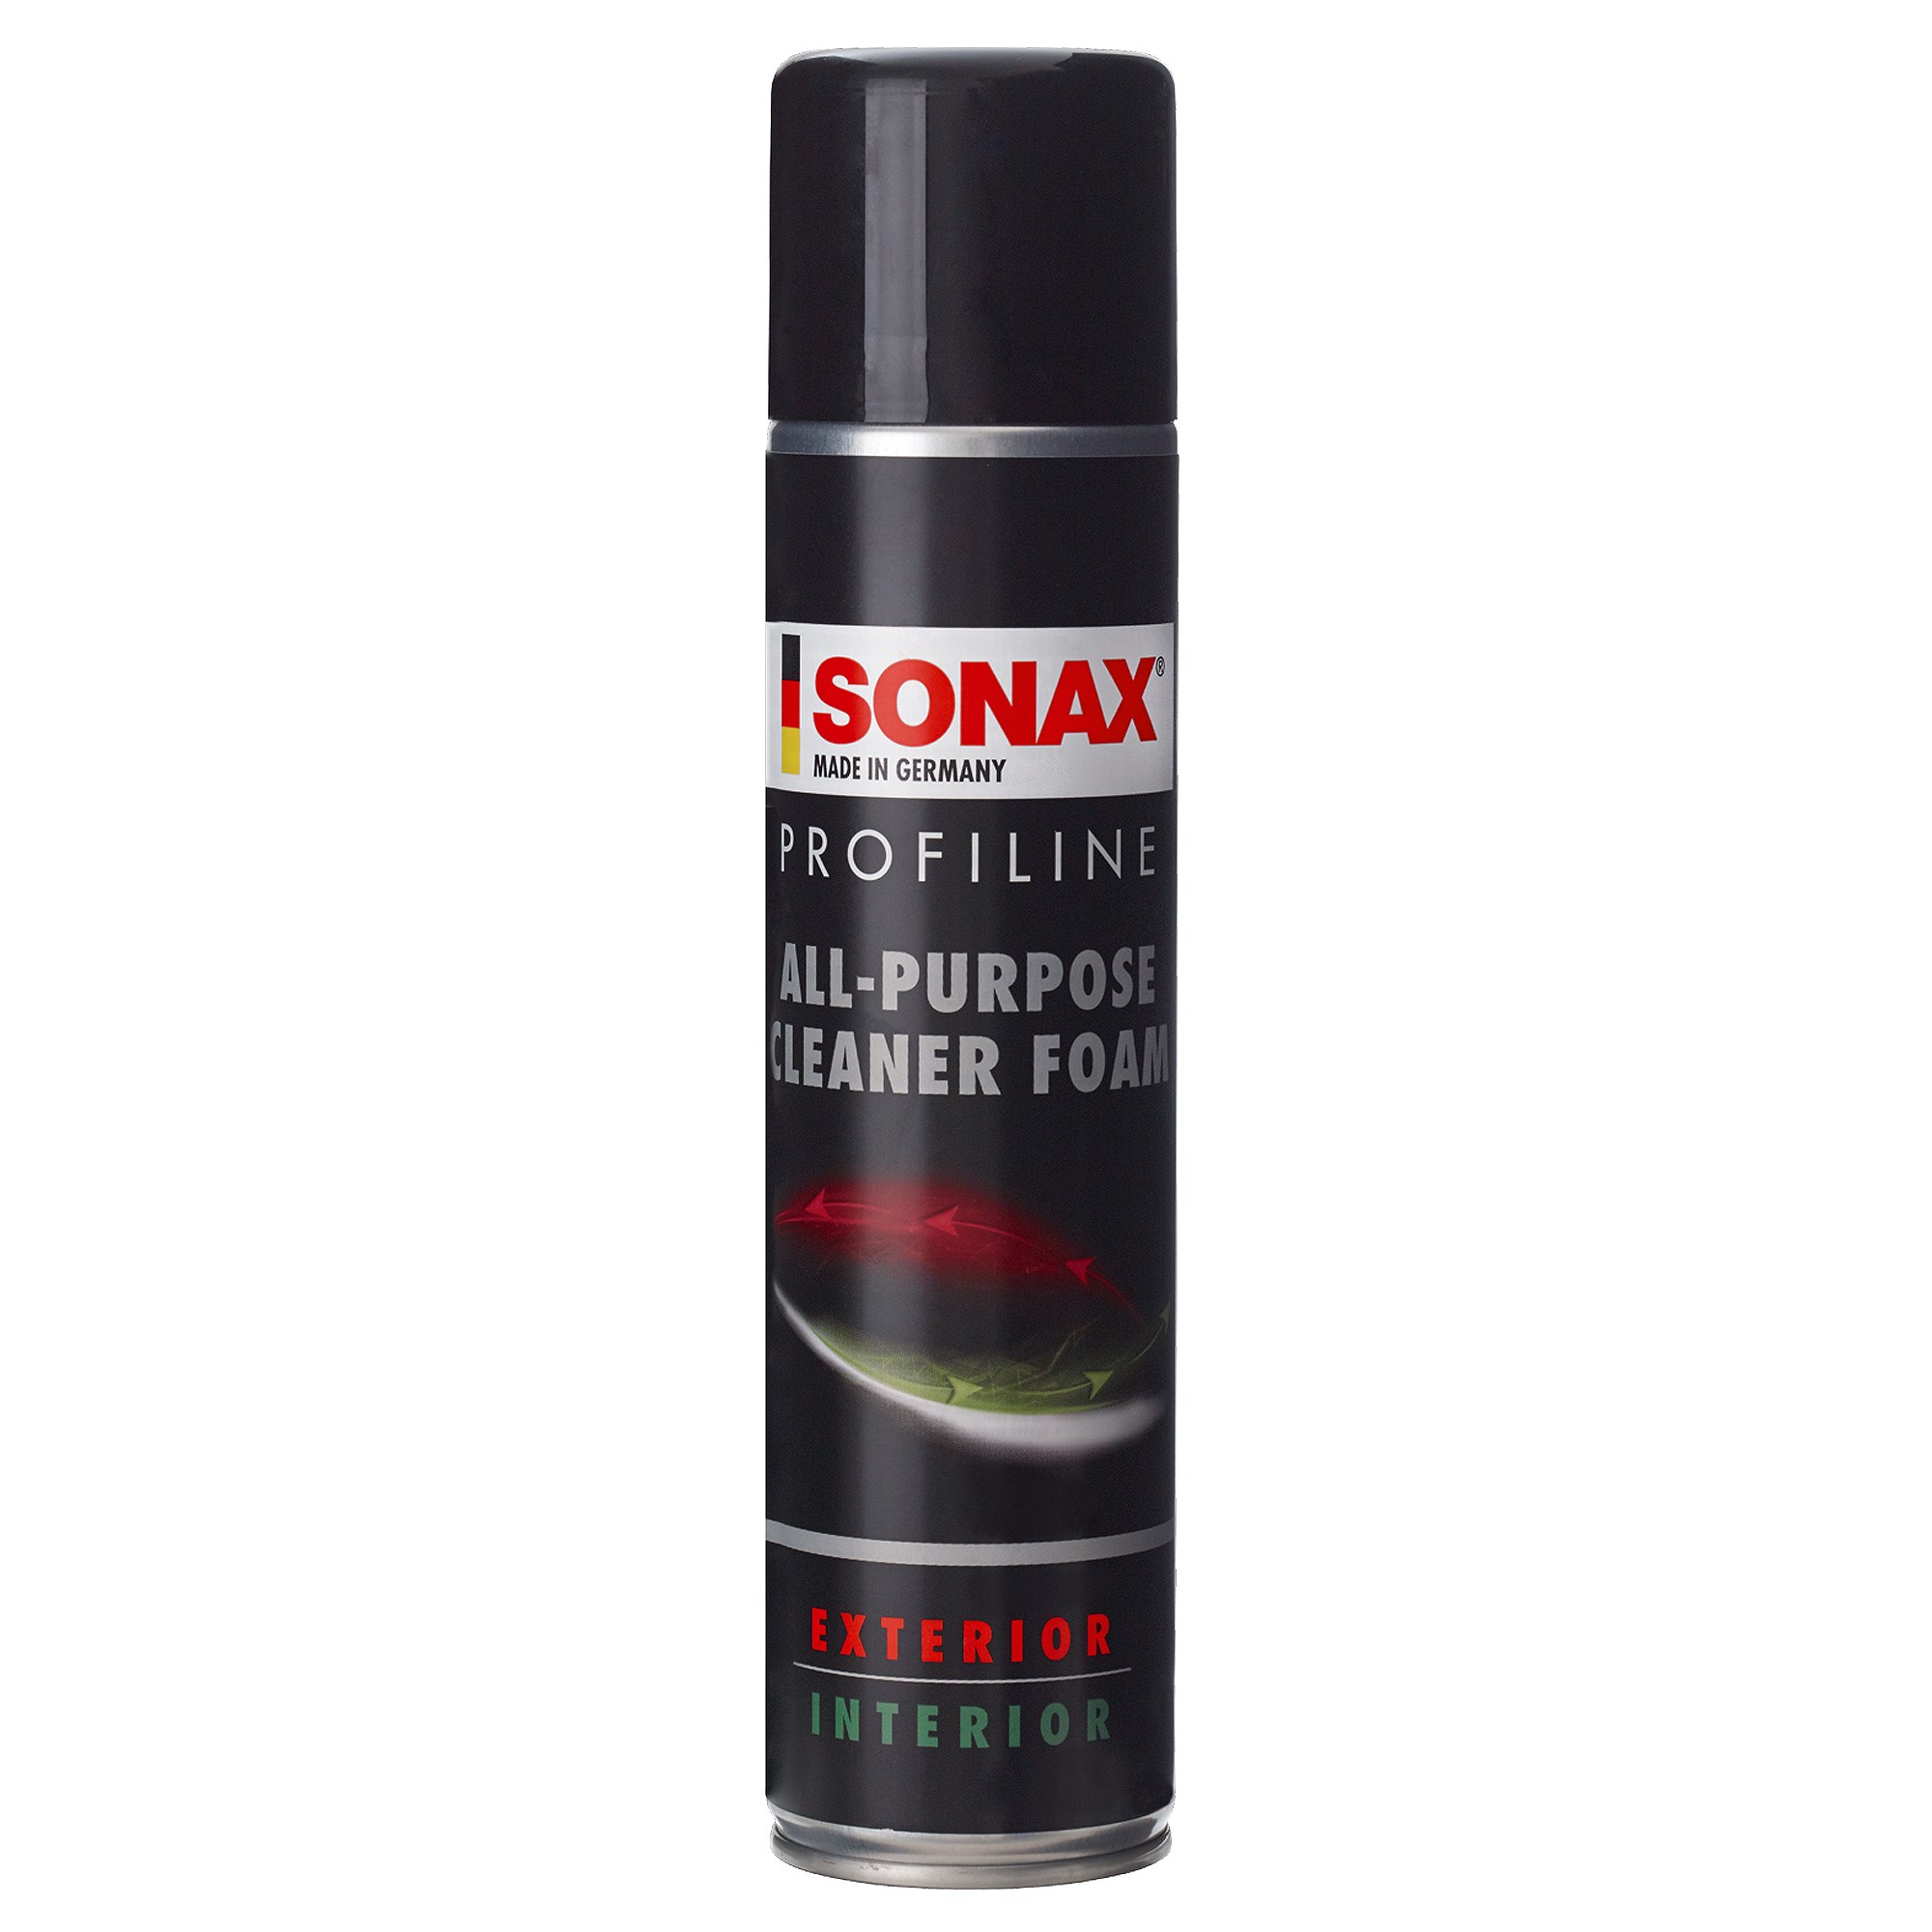 Sonax 1x 400ml Profiline All Purpose Cleaner Foam Apc